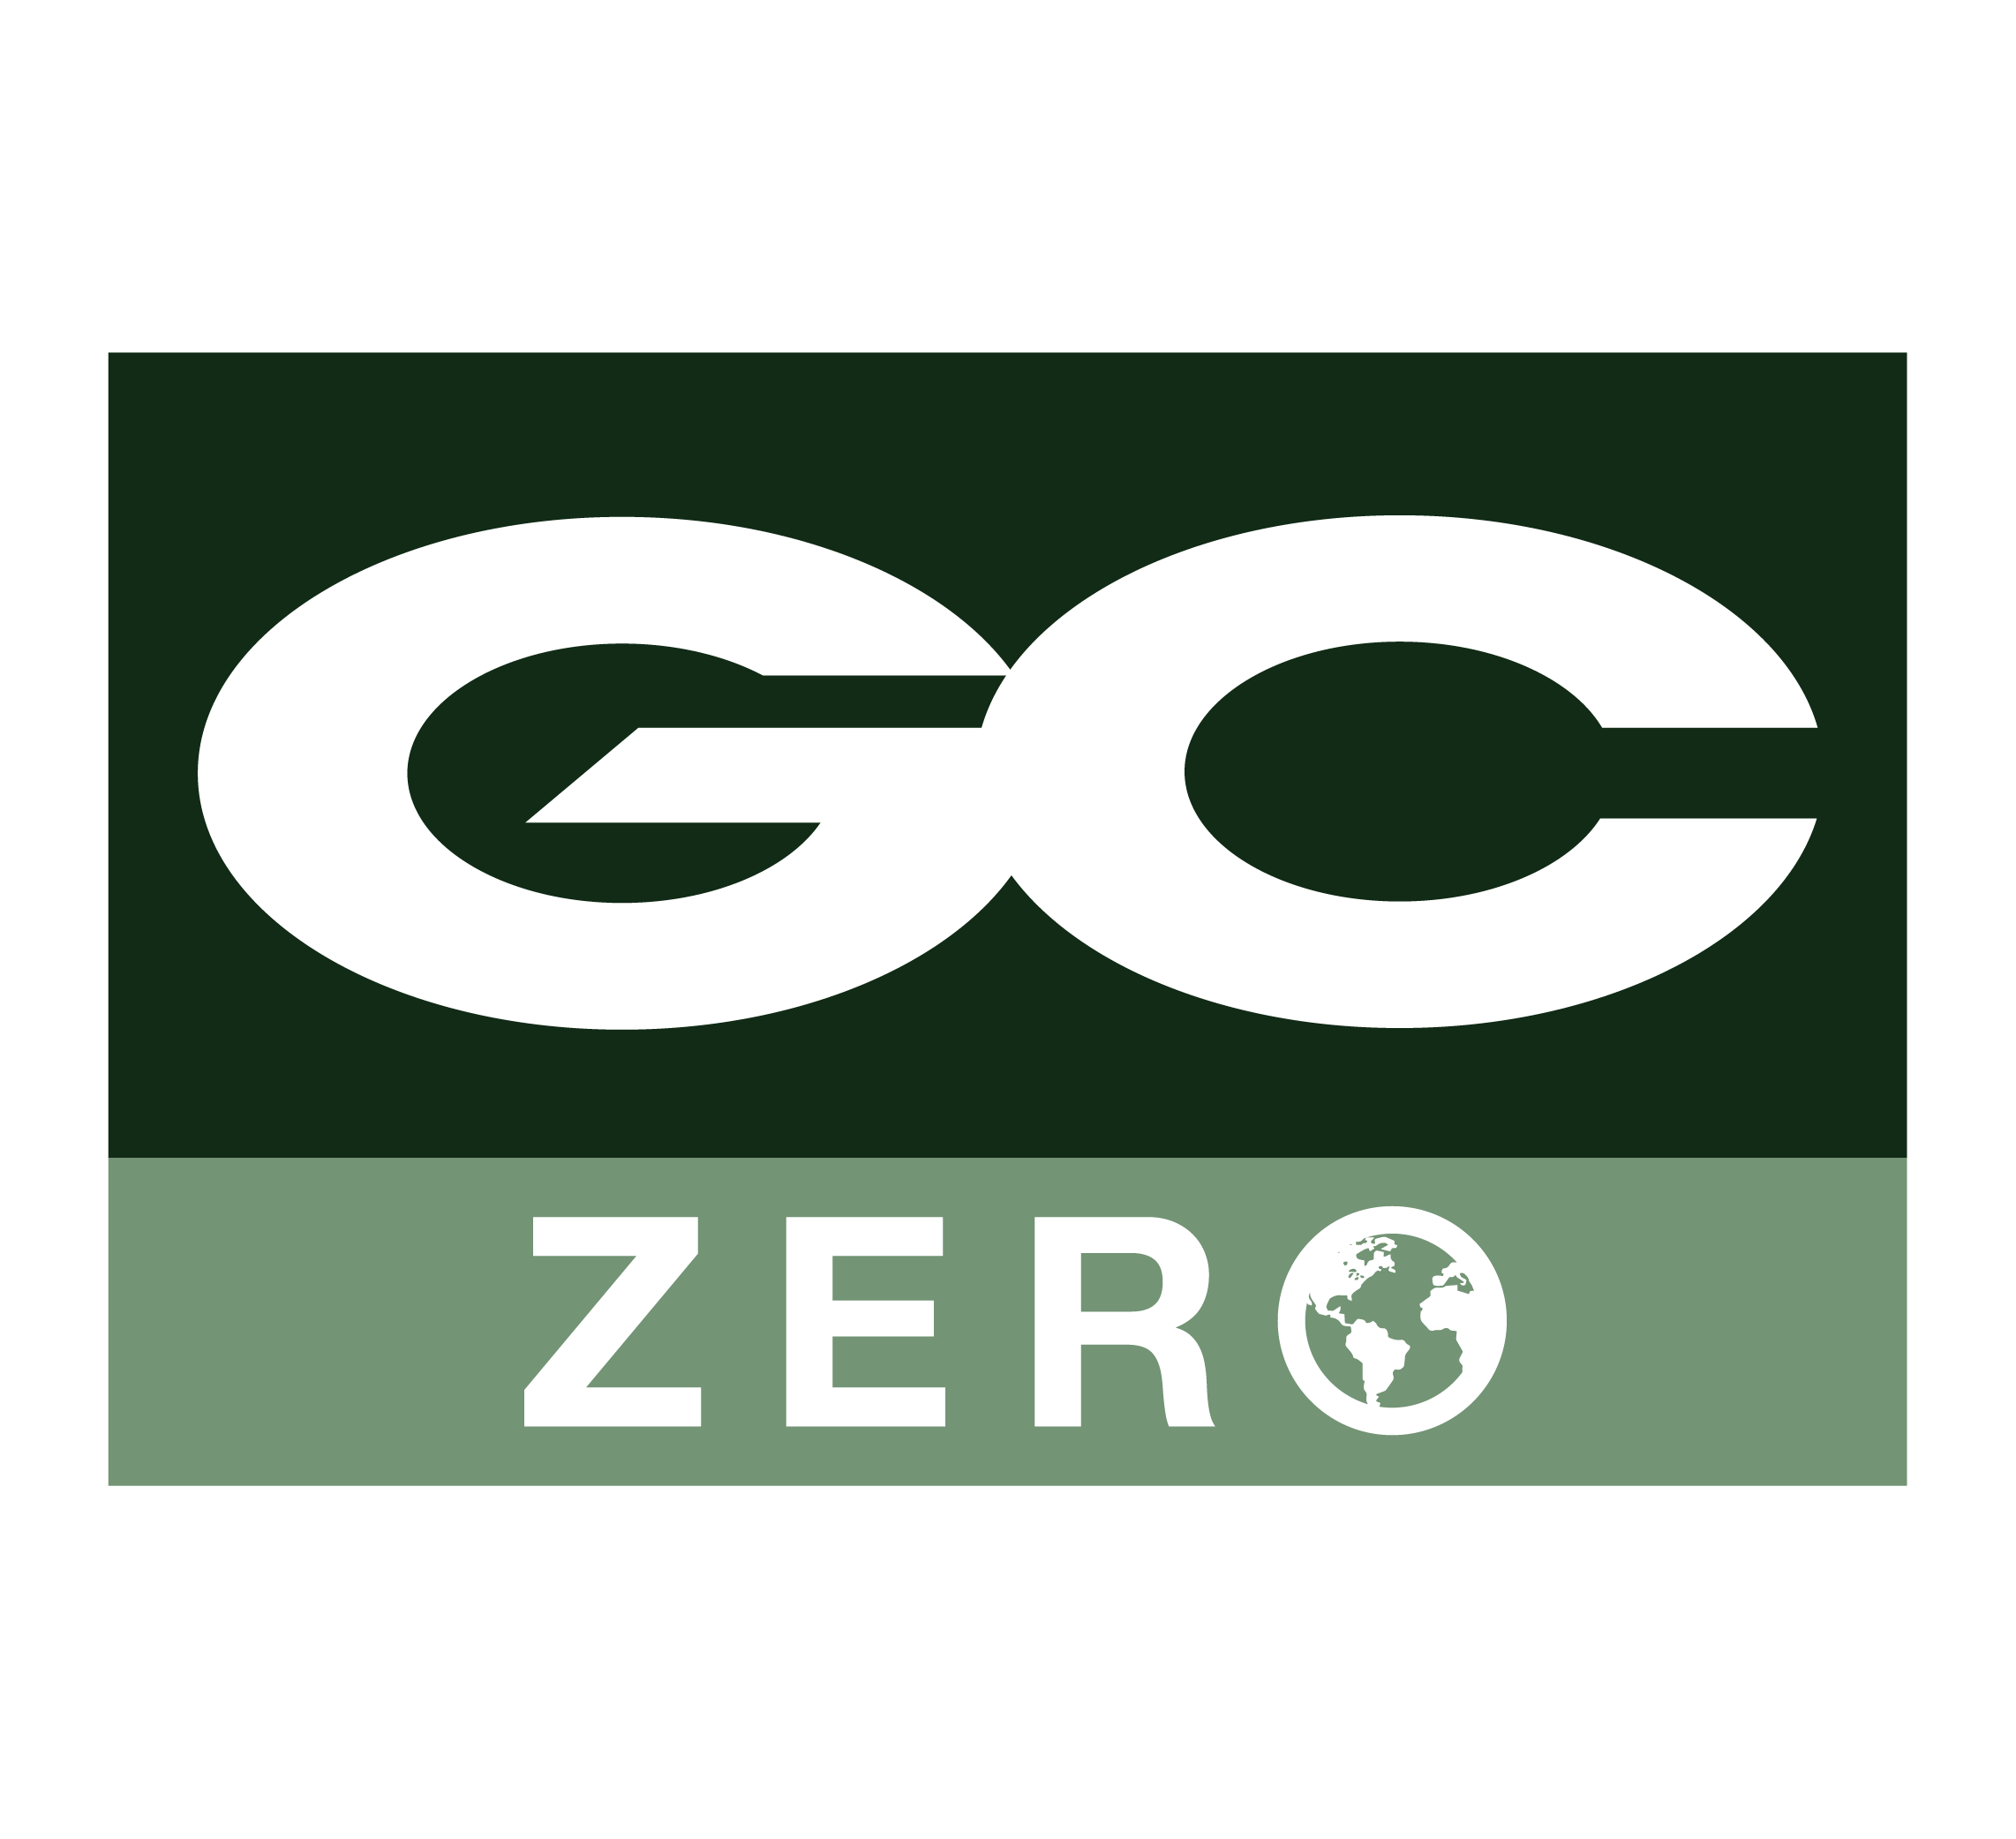 GC Zero Blog: The Plan